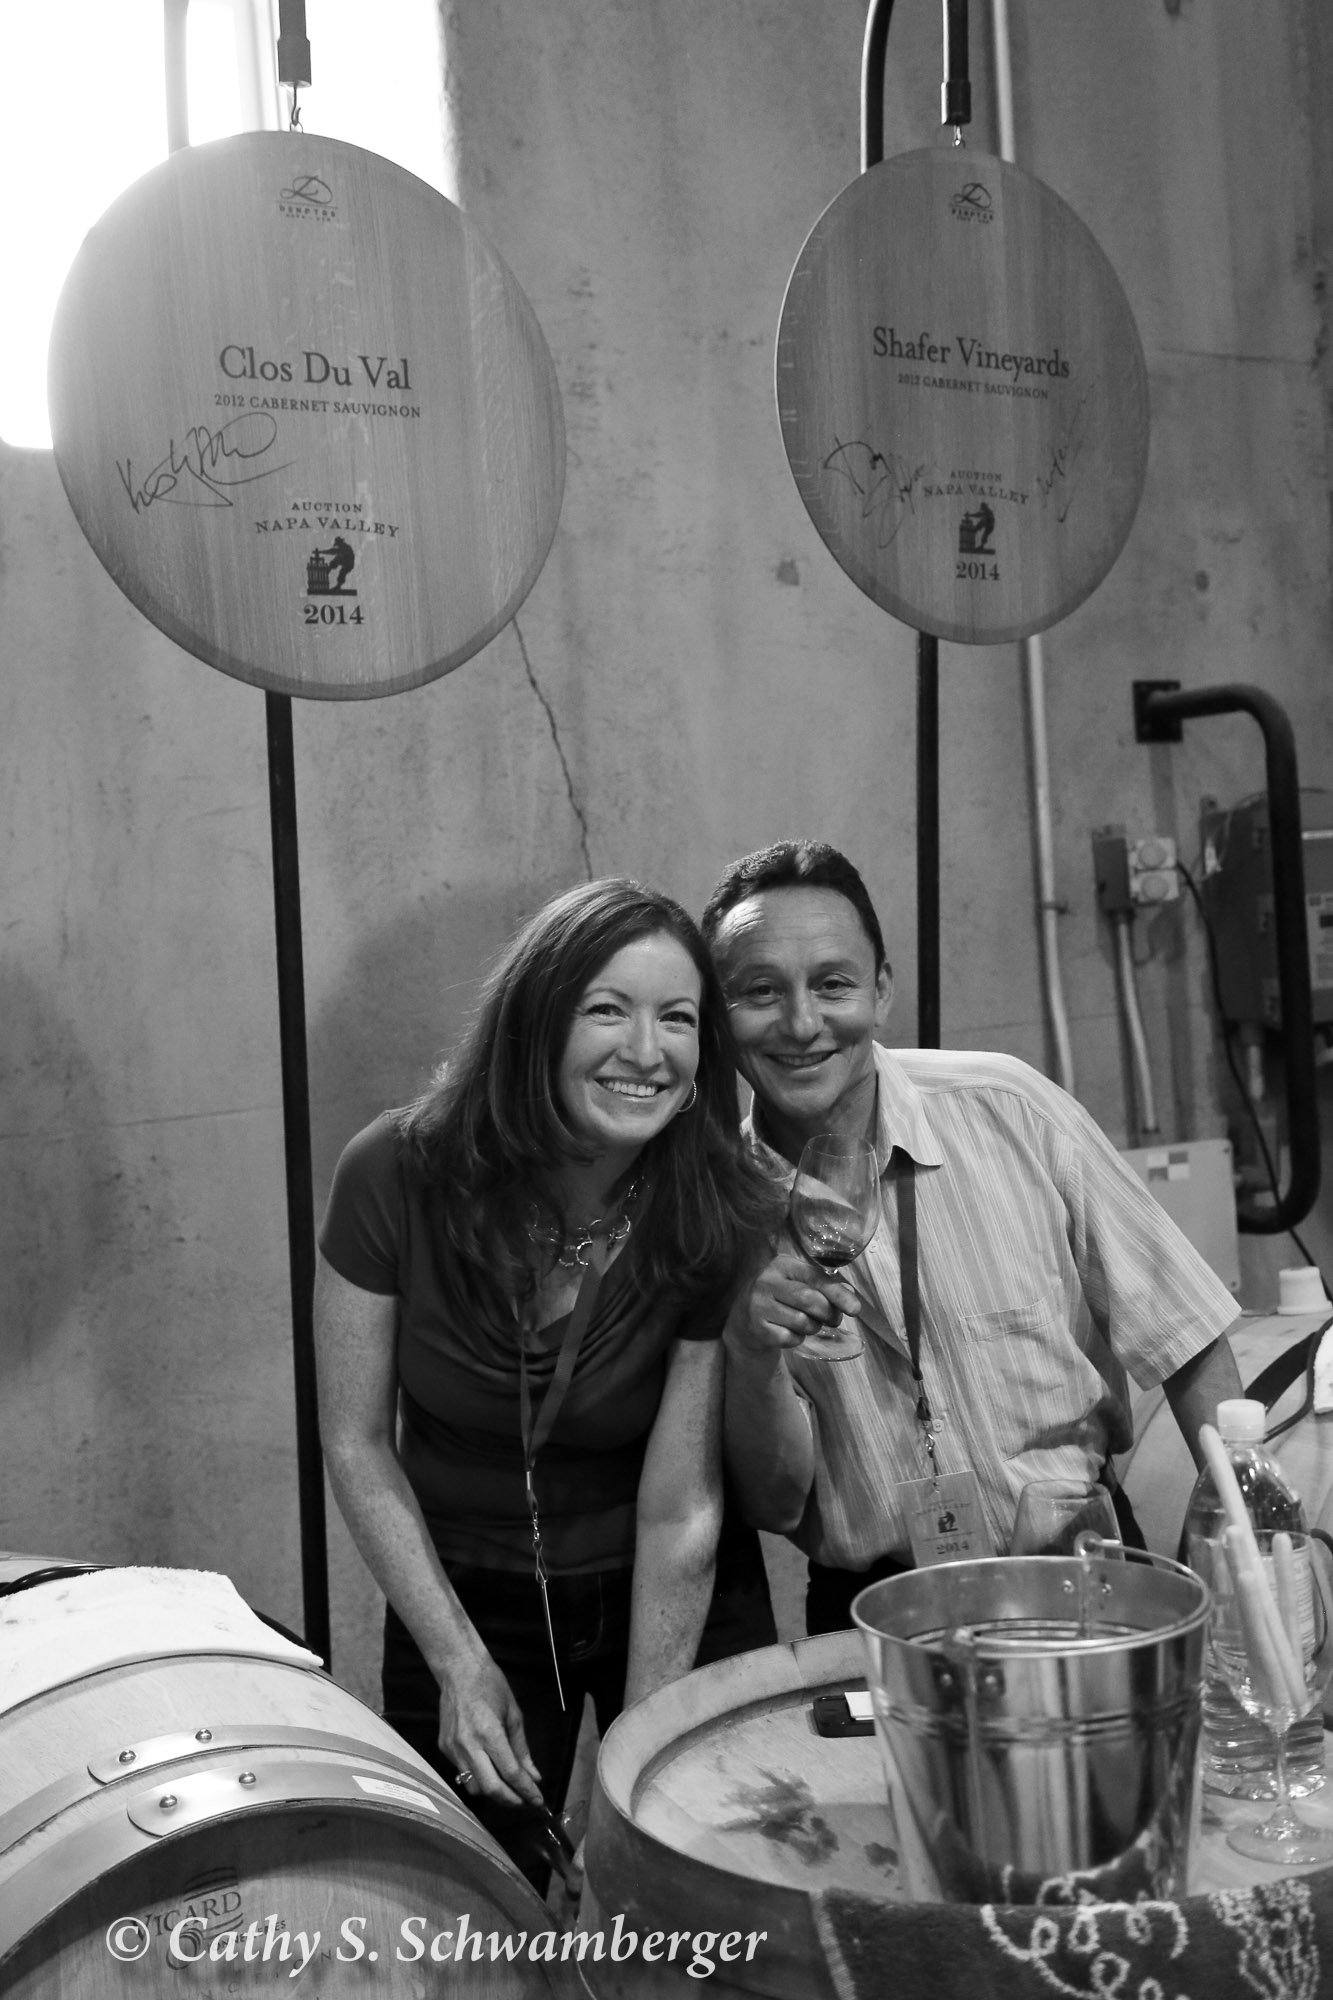 Kristy Melton, winemaker at Clos du Val, and Elias Fernandez, winemaker at Shafer